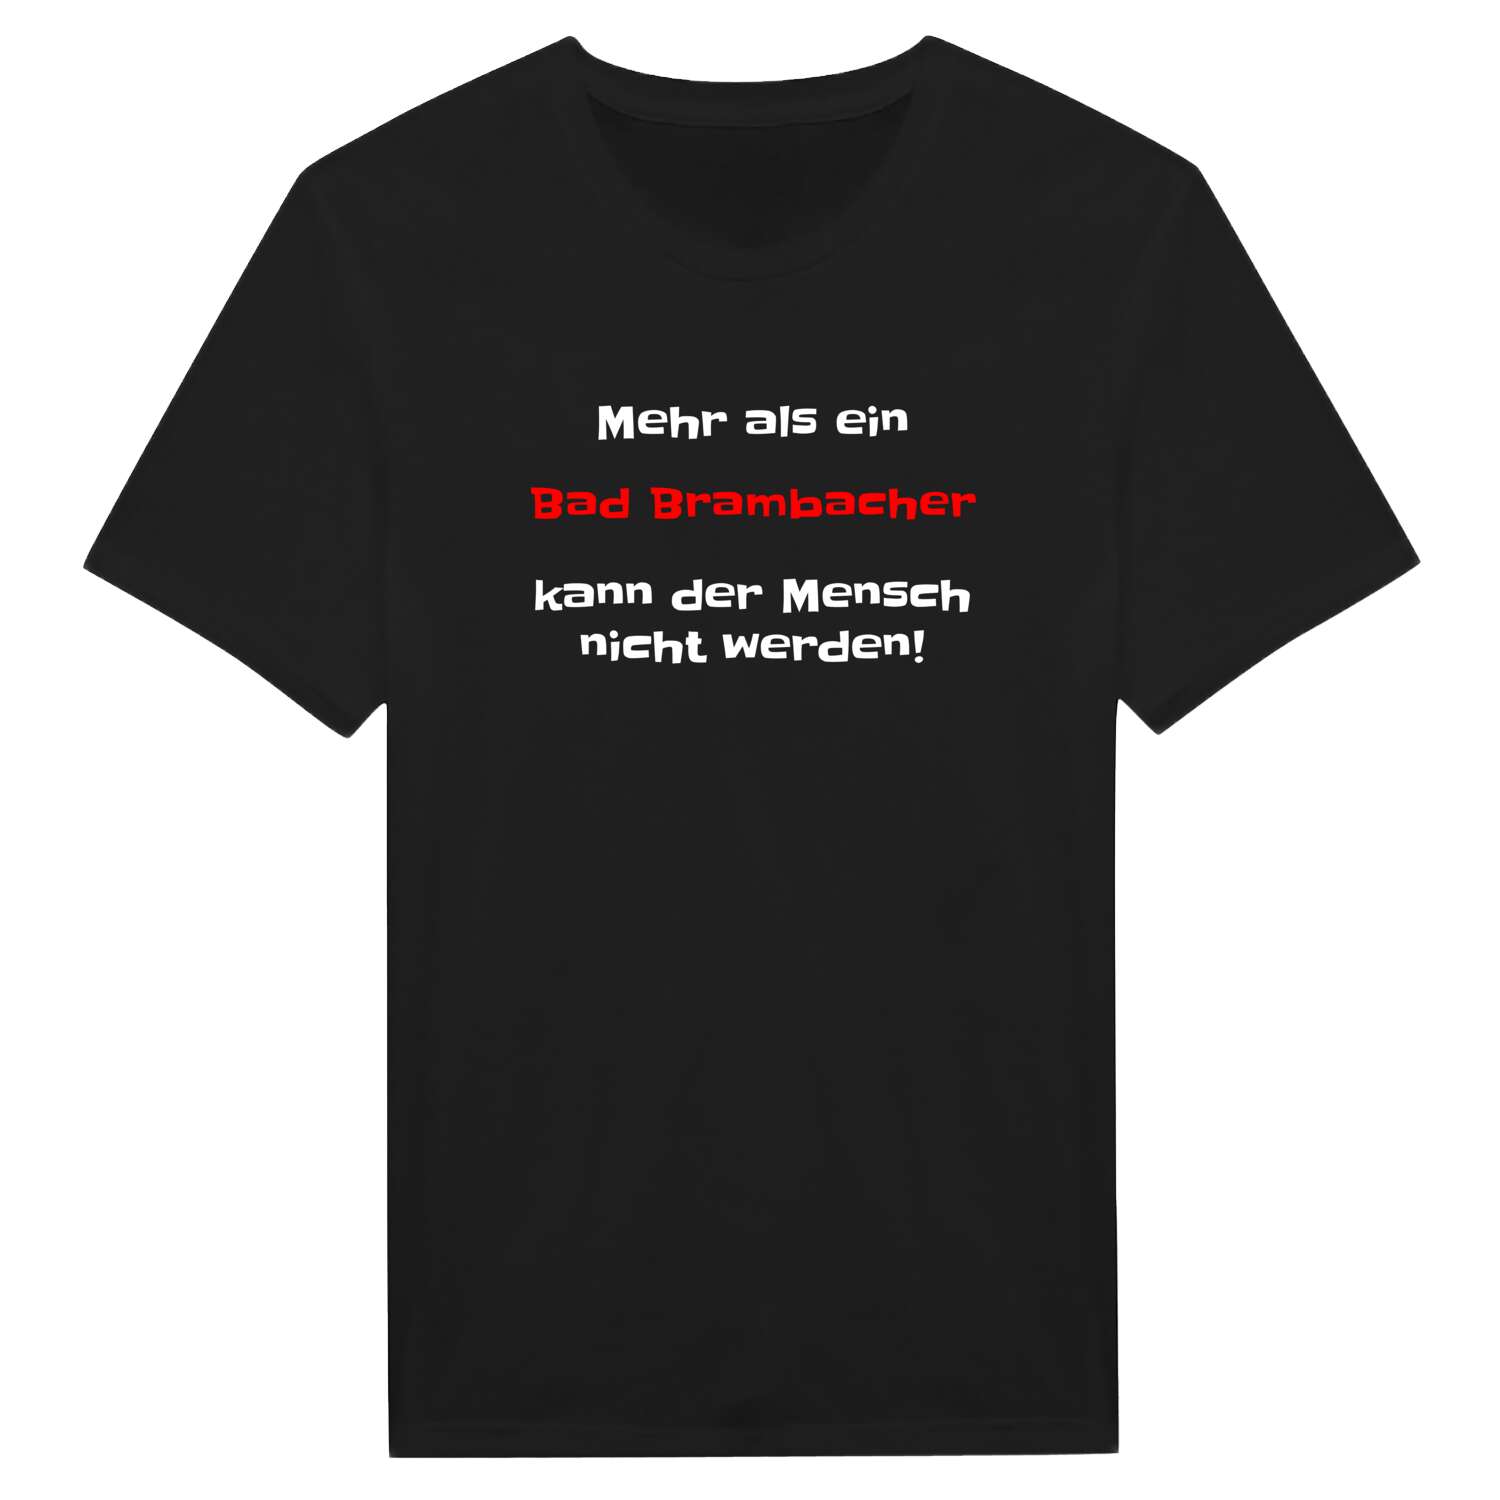 Bad Brambach T-Shirt »Mehr als ein«